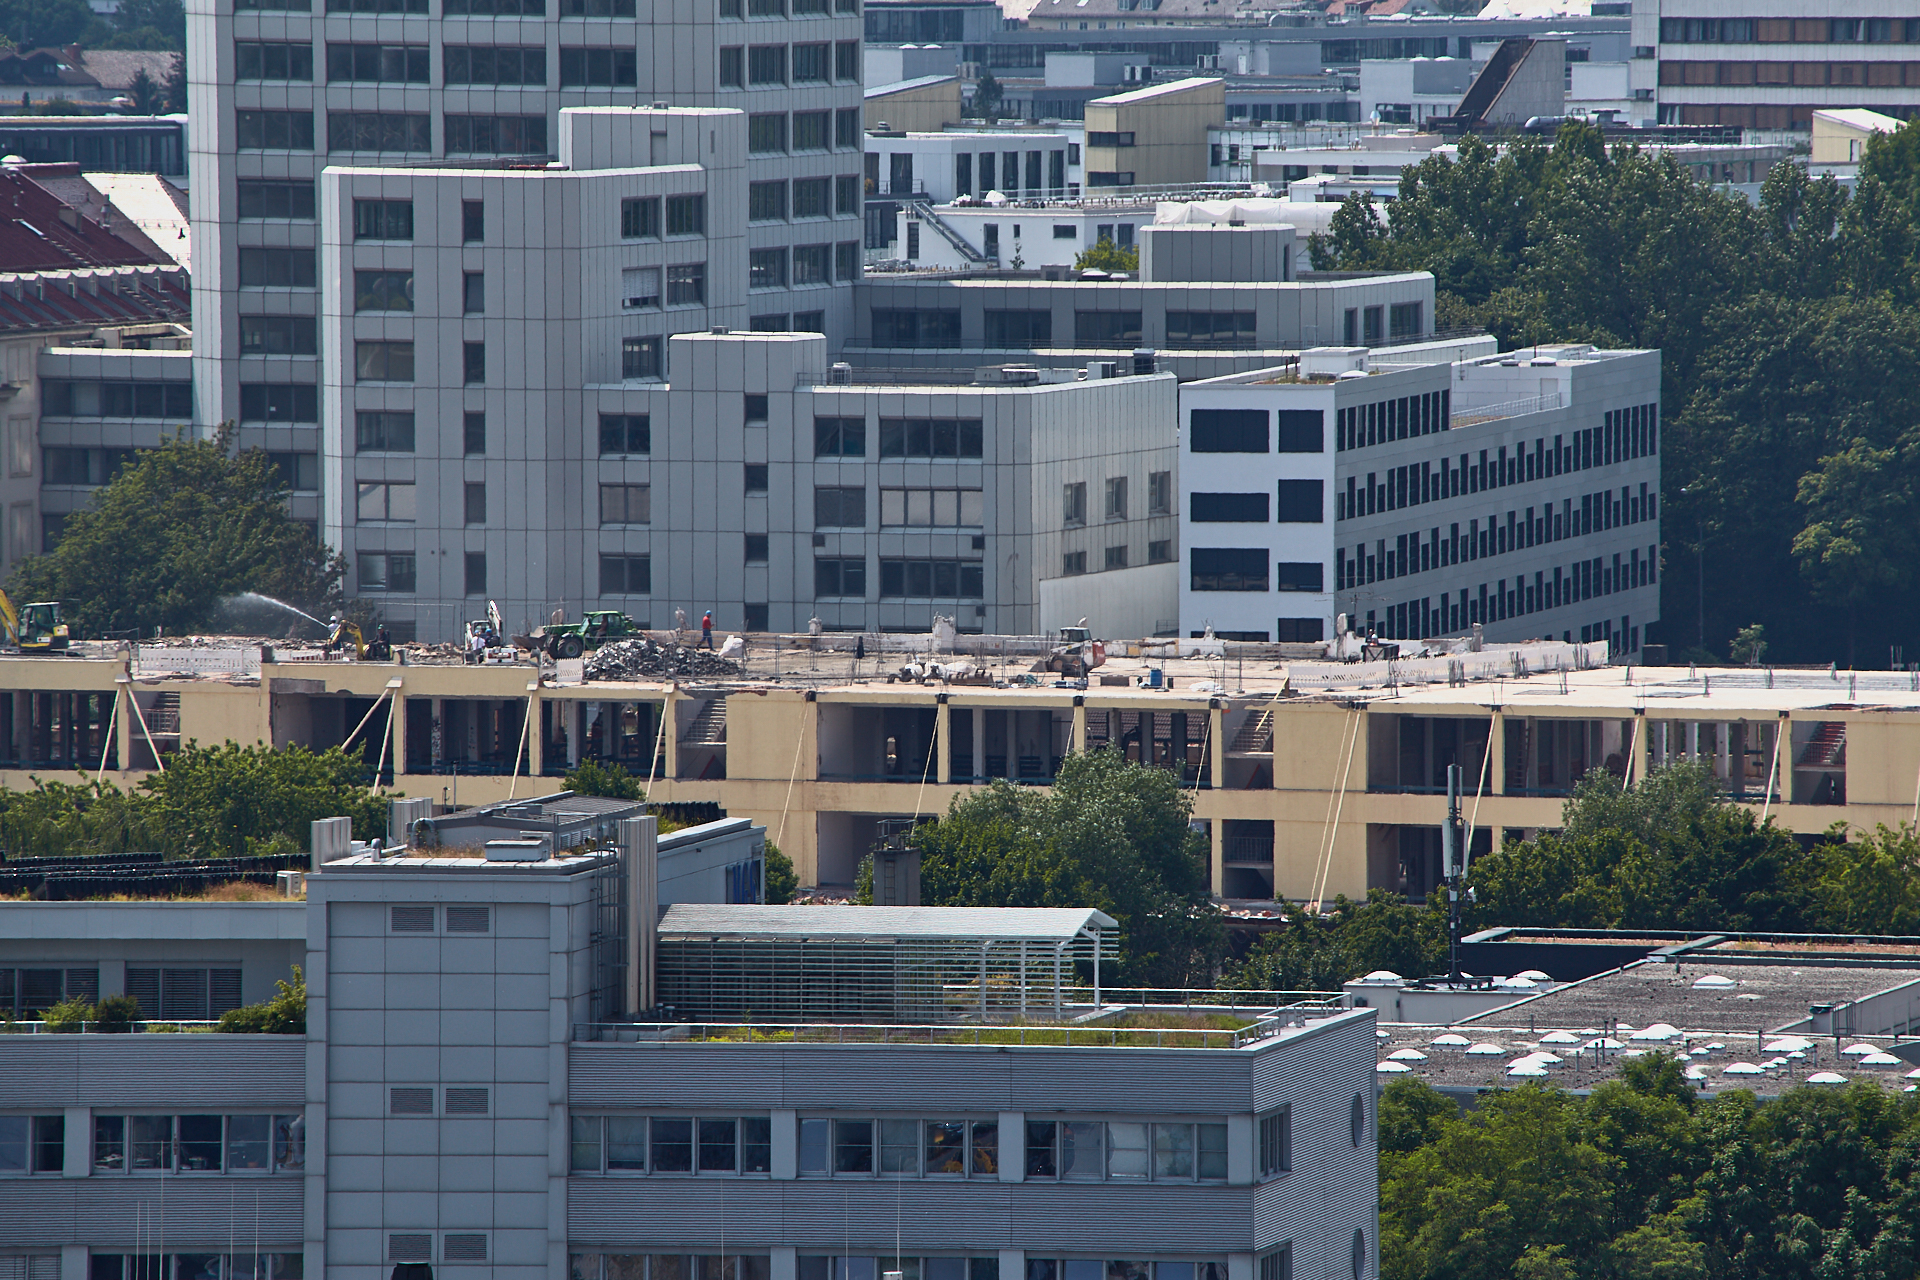 13.06.2014 - Dacharbeiten auf dem Dach des zukünftigen WERK 3